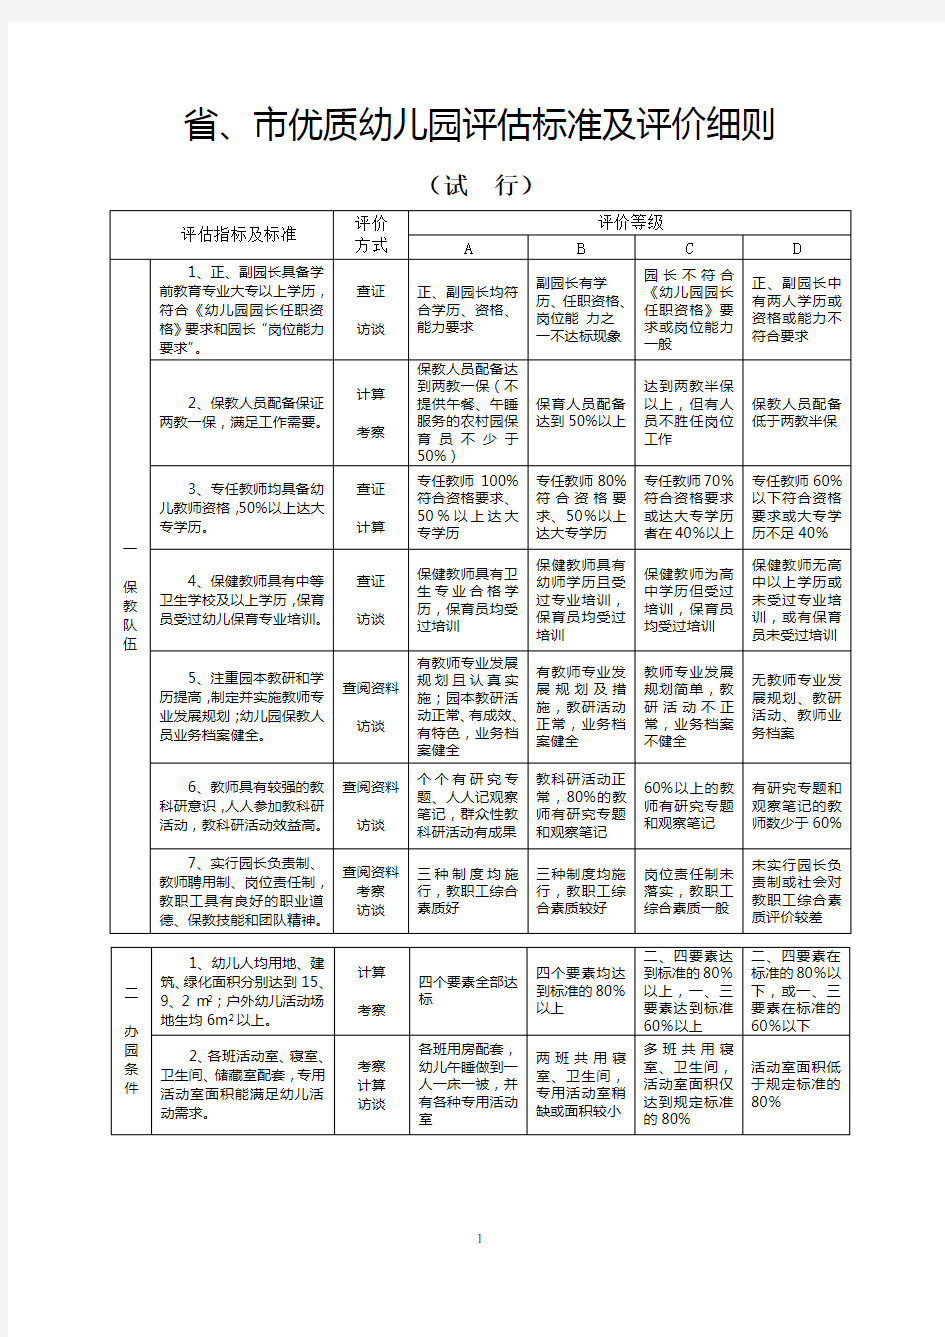 江苏省优质幼儿园评估标准及评价细则